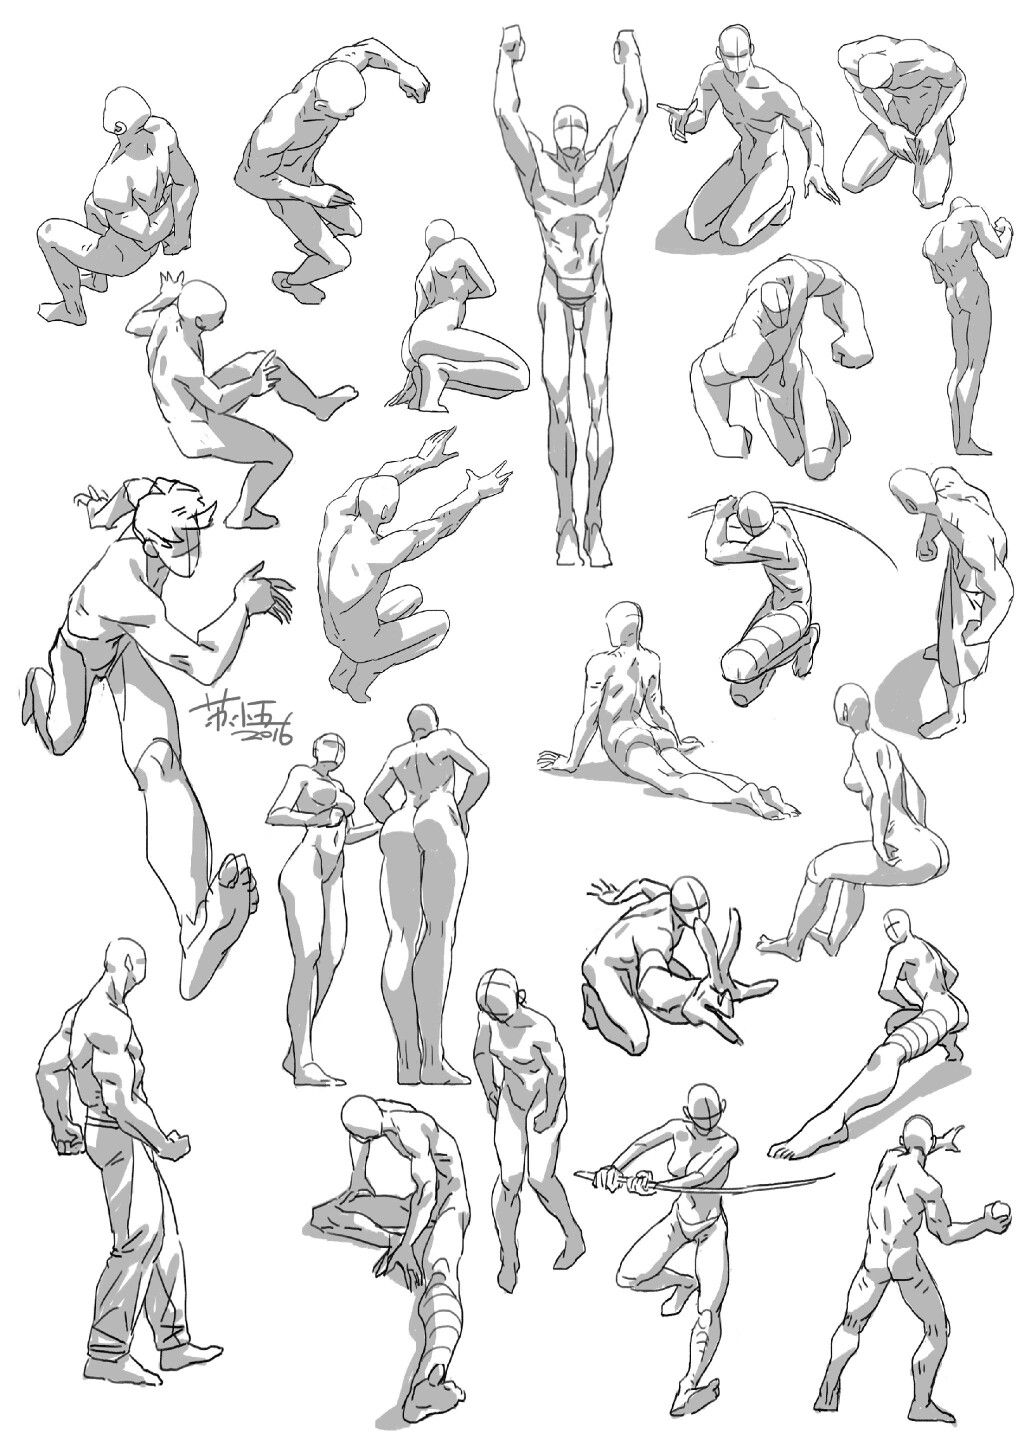 Male Full body Action poses by RedlionV on DeviantArt